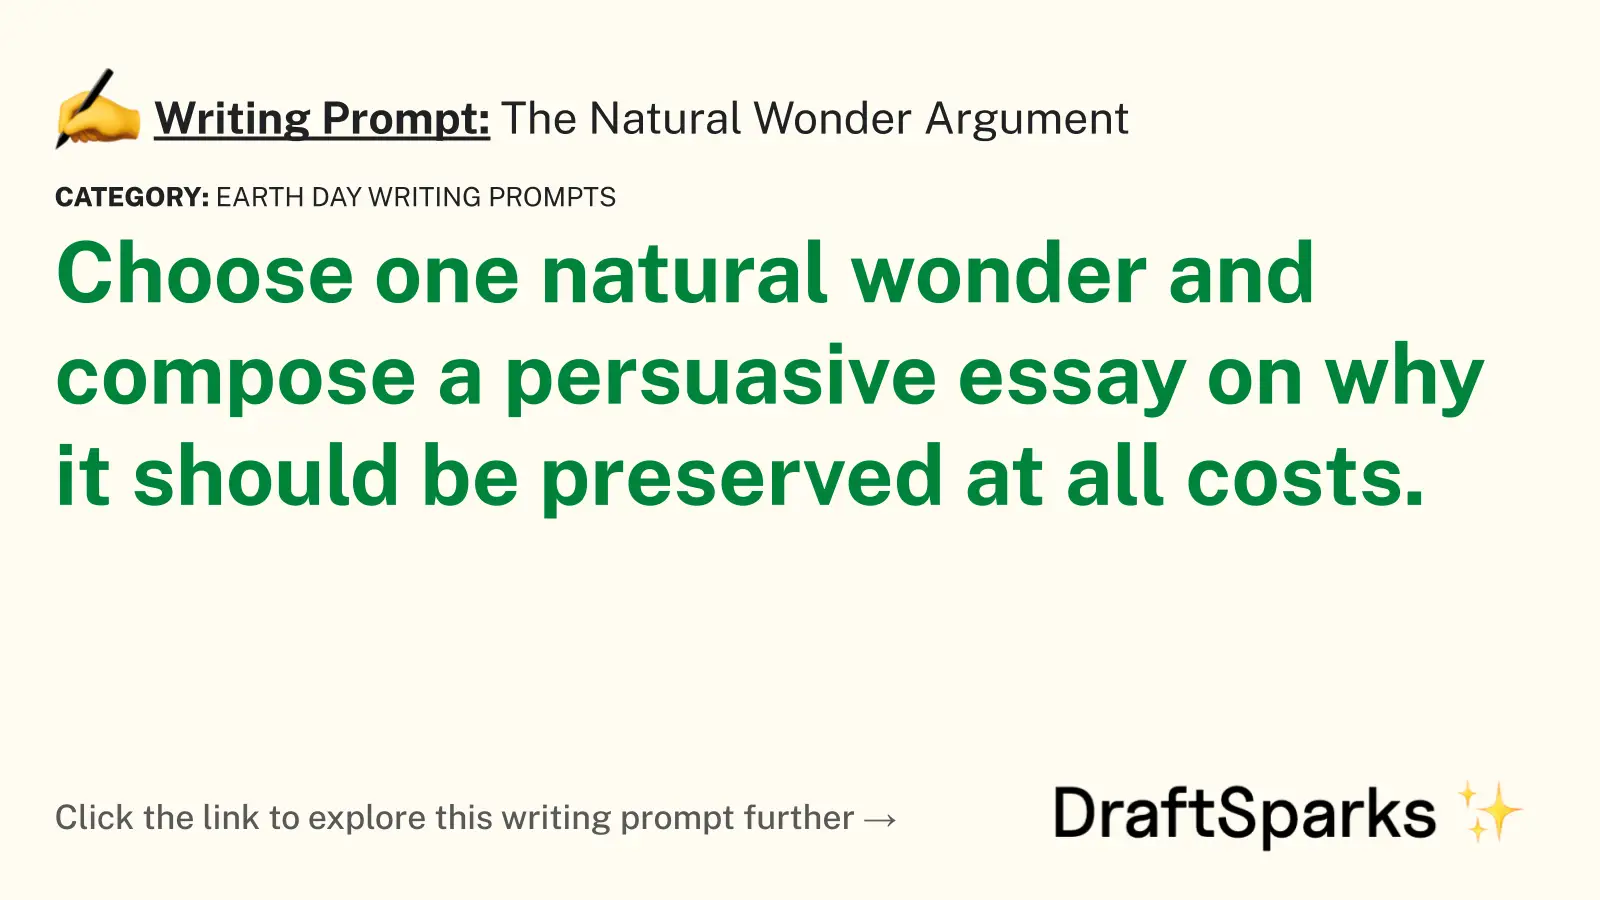 The Natural Wonder Argument